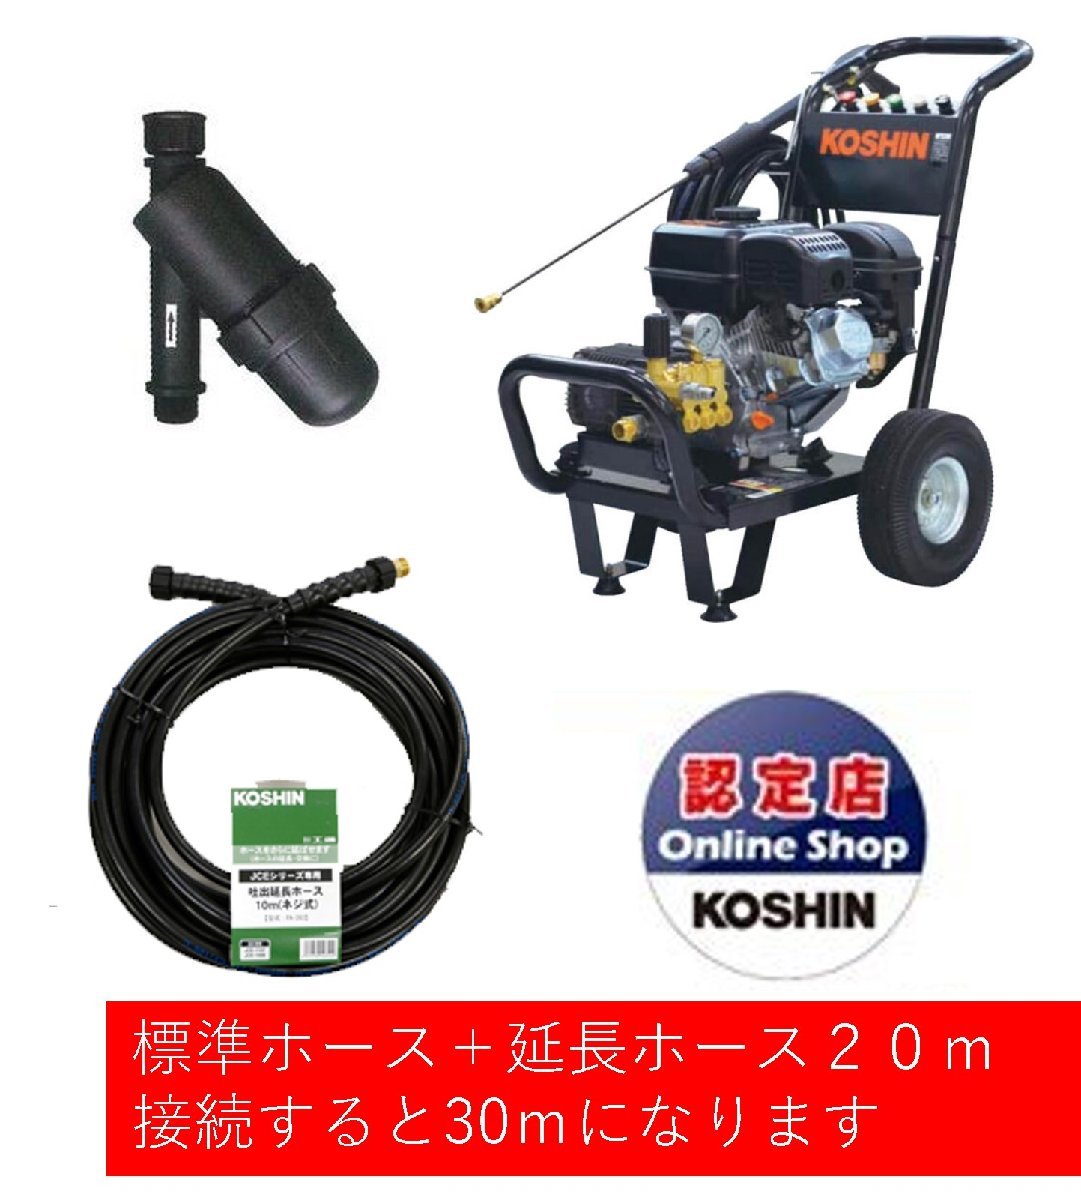 全品送料無料 工進 KOSHIN エンジン式高圧洗浄機 JCE-1408U 14MPa 据置